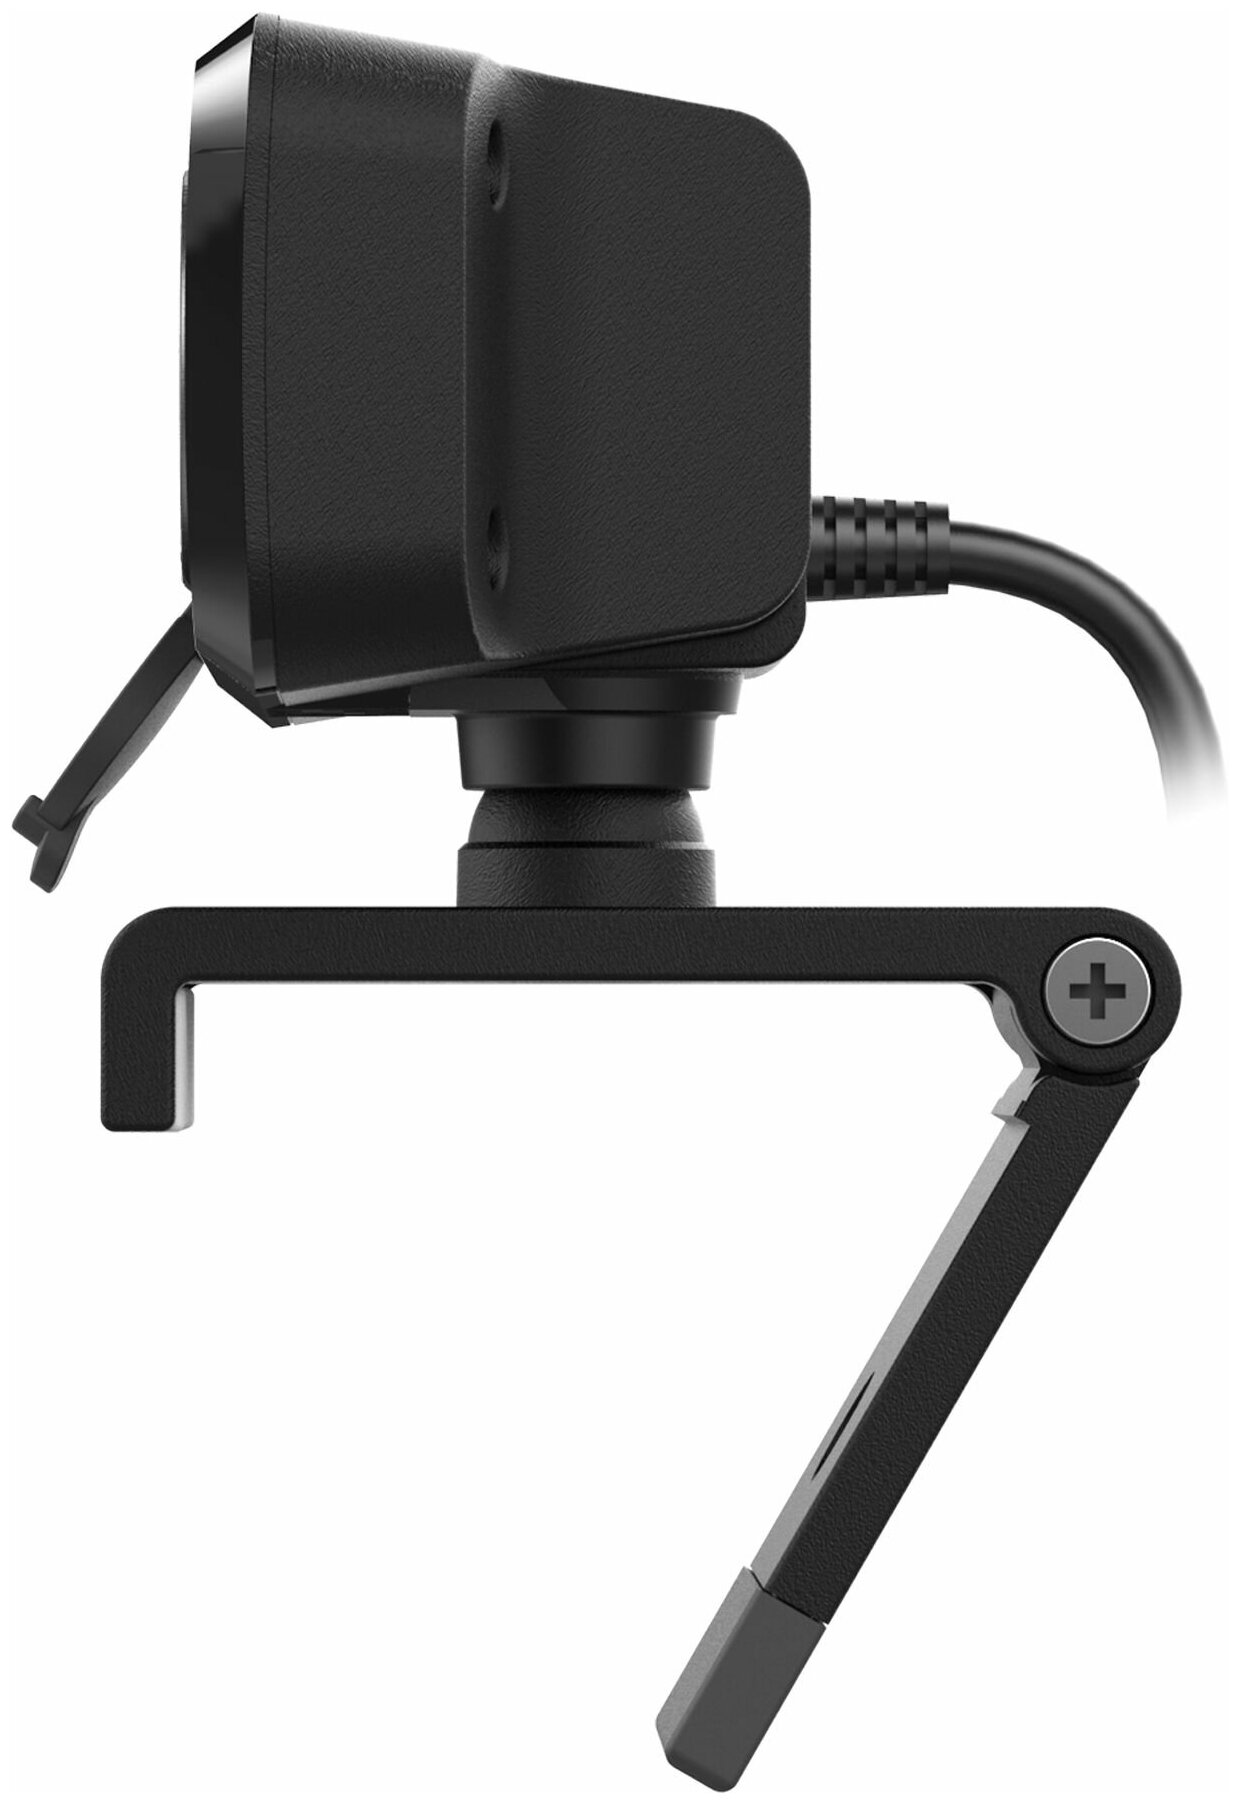 Камера Web Creative Live! Cam SYNC 1080P V2 черный 2Mpix (1920x1080) USB2.0 с микрофоном